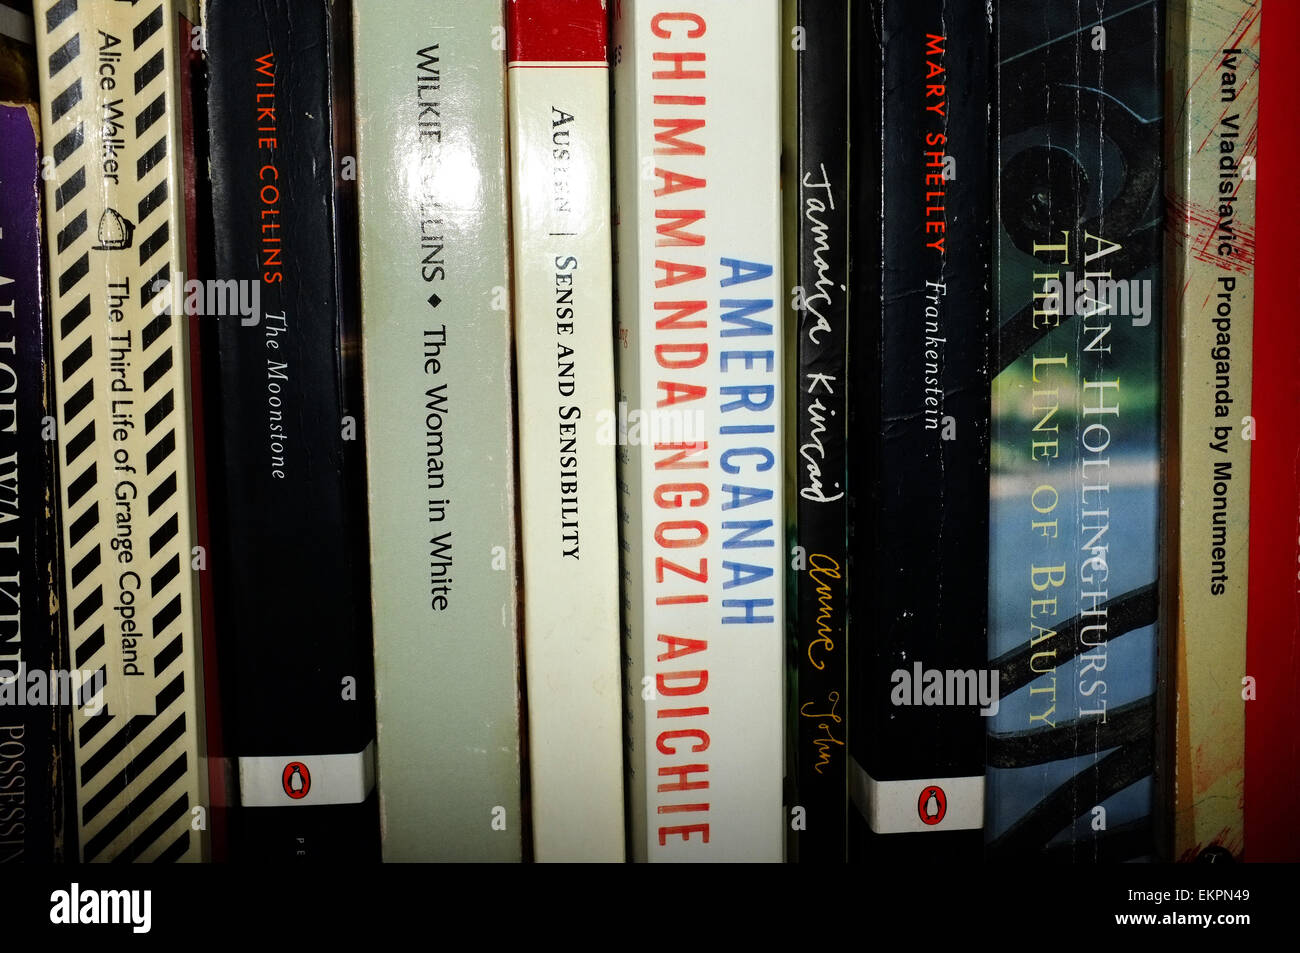 Eine Sammlung von Büchern in einem Bücherregal, darunter Werke von Chimamanda Ngozi Adichie, Alice Walker und Wilkie Collins. Stockfoto